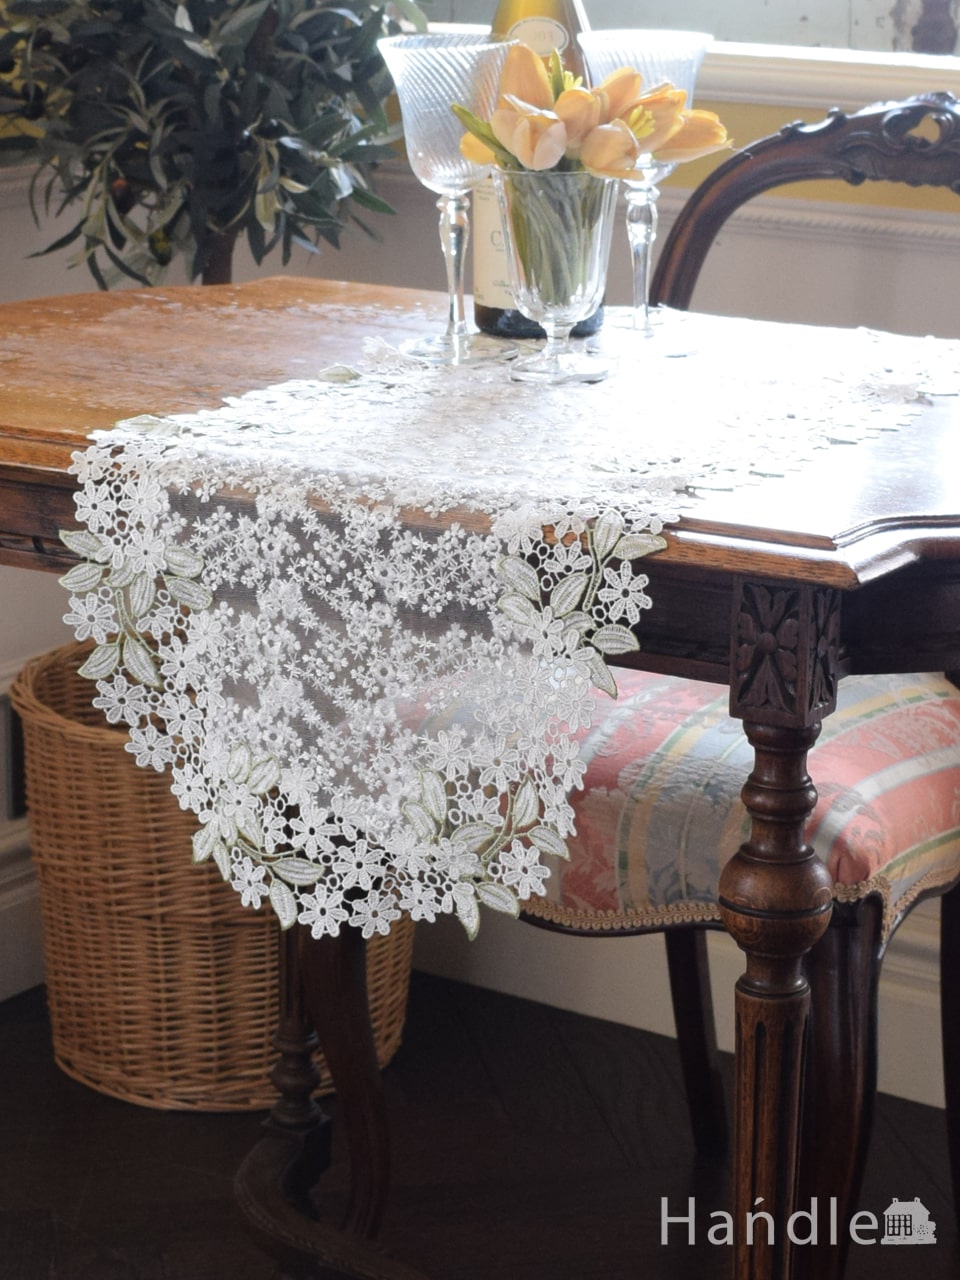 フレンチアンティーク調のテーブルランナー、手刺繍風のお花のレースが華やかなテーブルセンター 35x90 (n20-143)